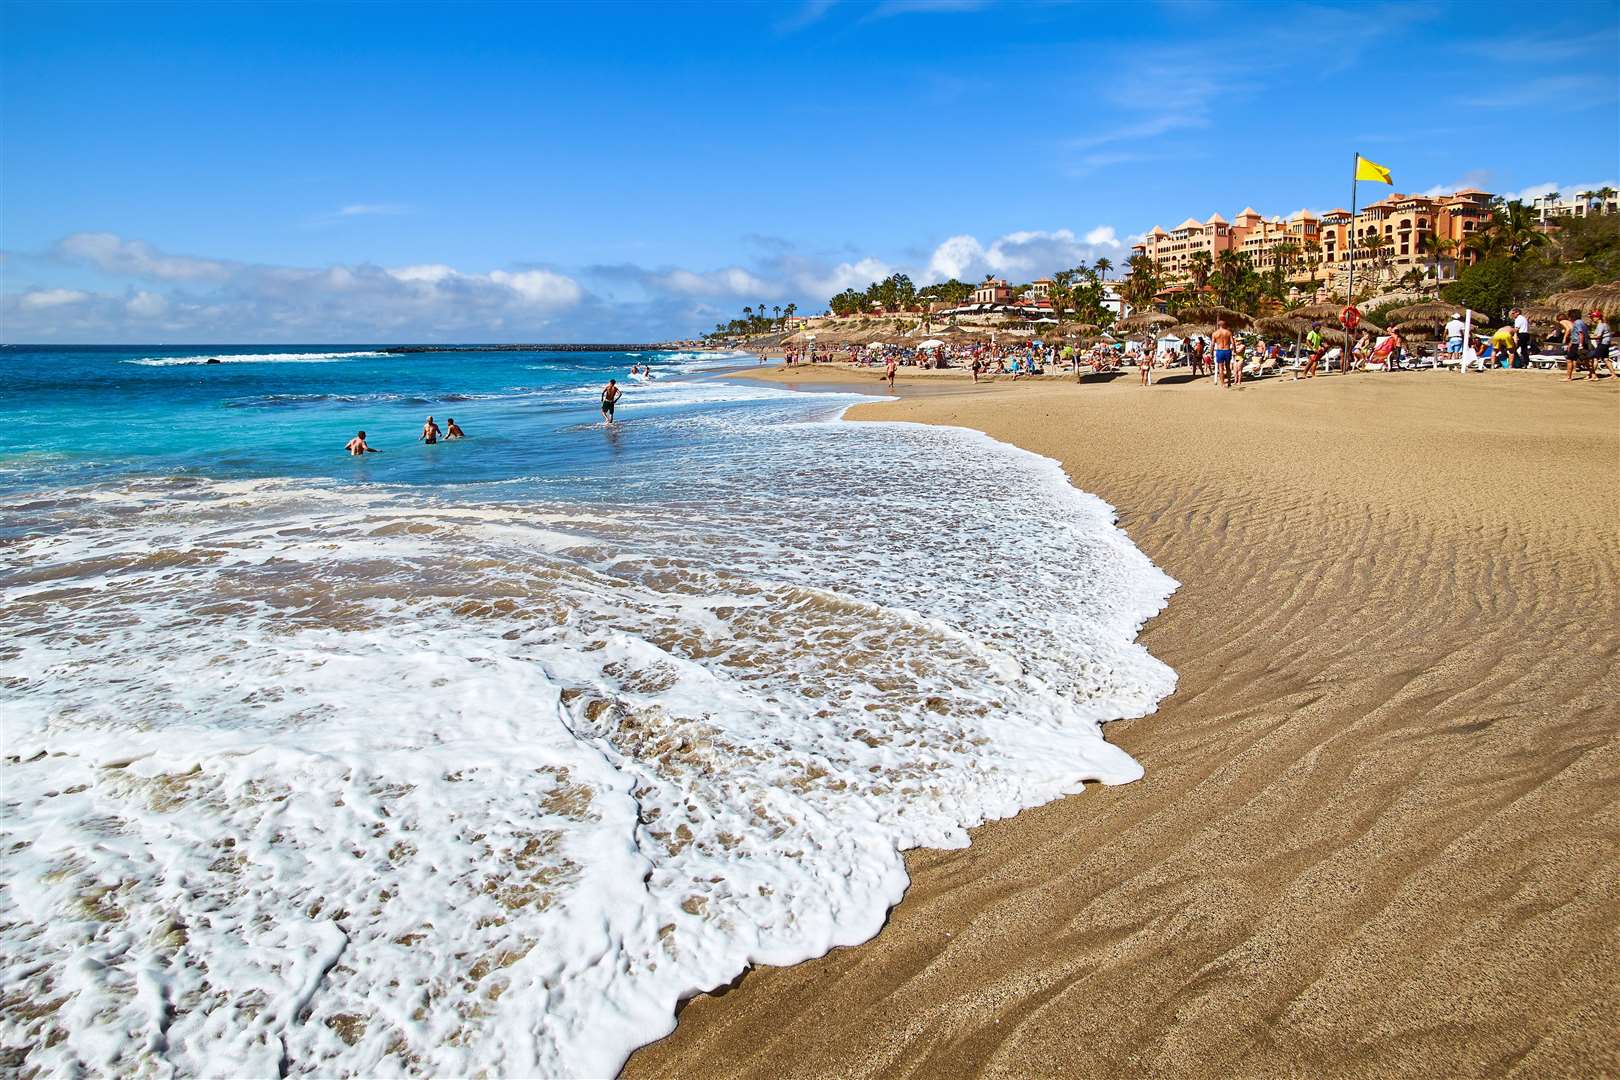 The popular resort Costa Adeje in Tenerife.